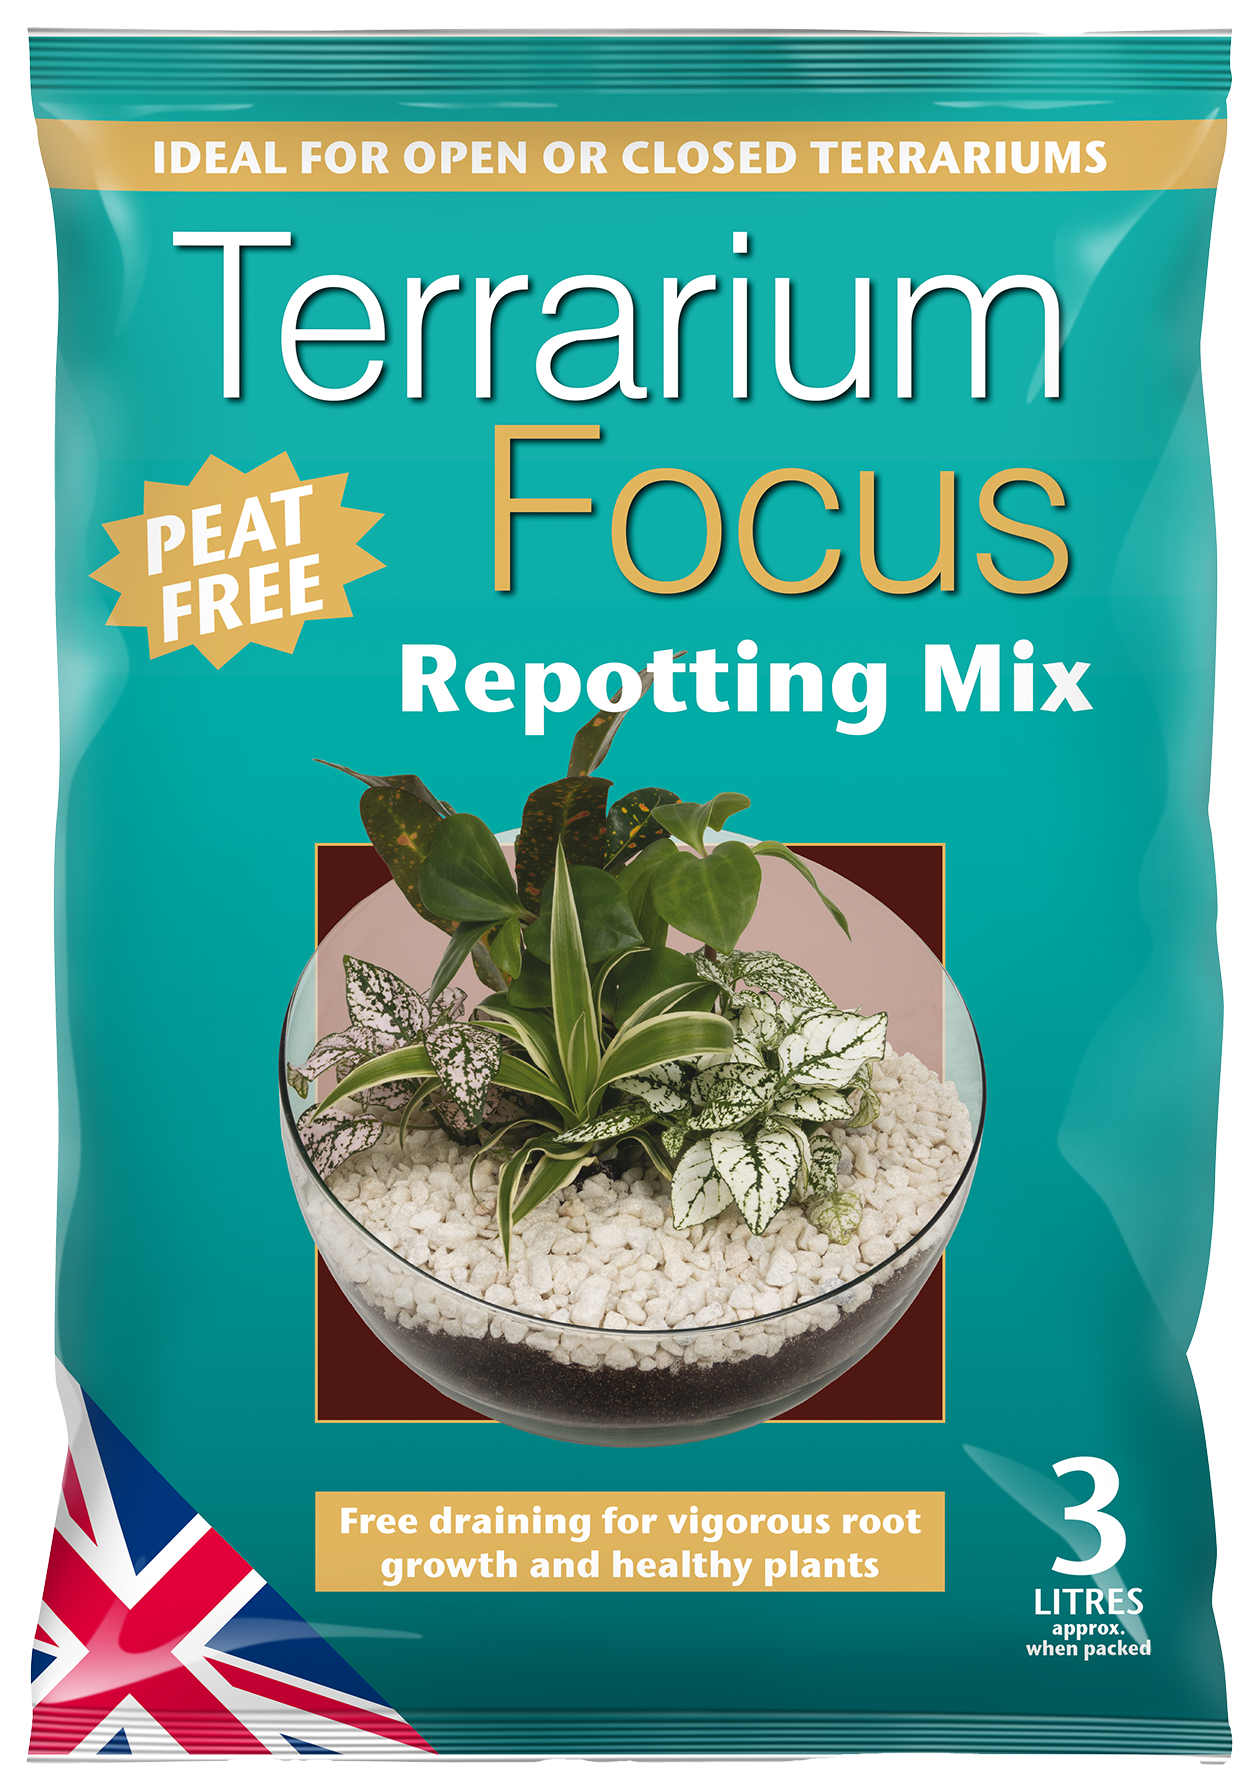 Compost - Terrarium Focus Repotting Mix - Peat Free